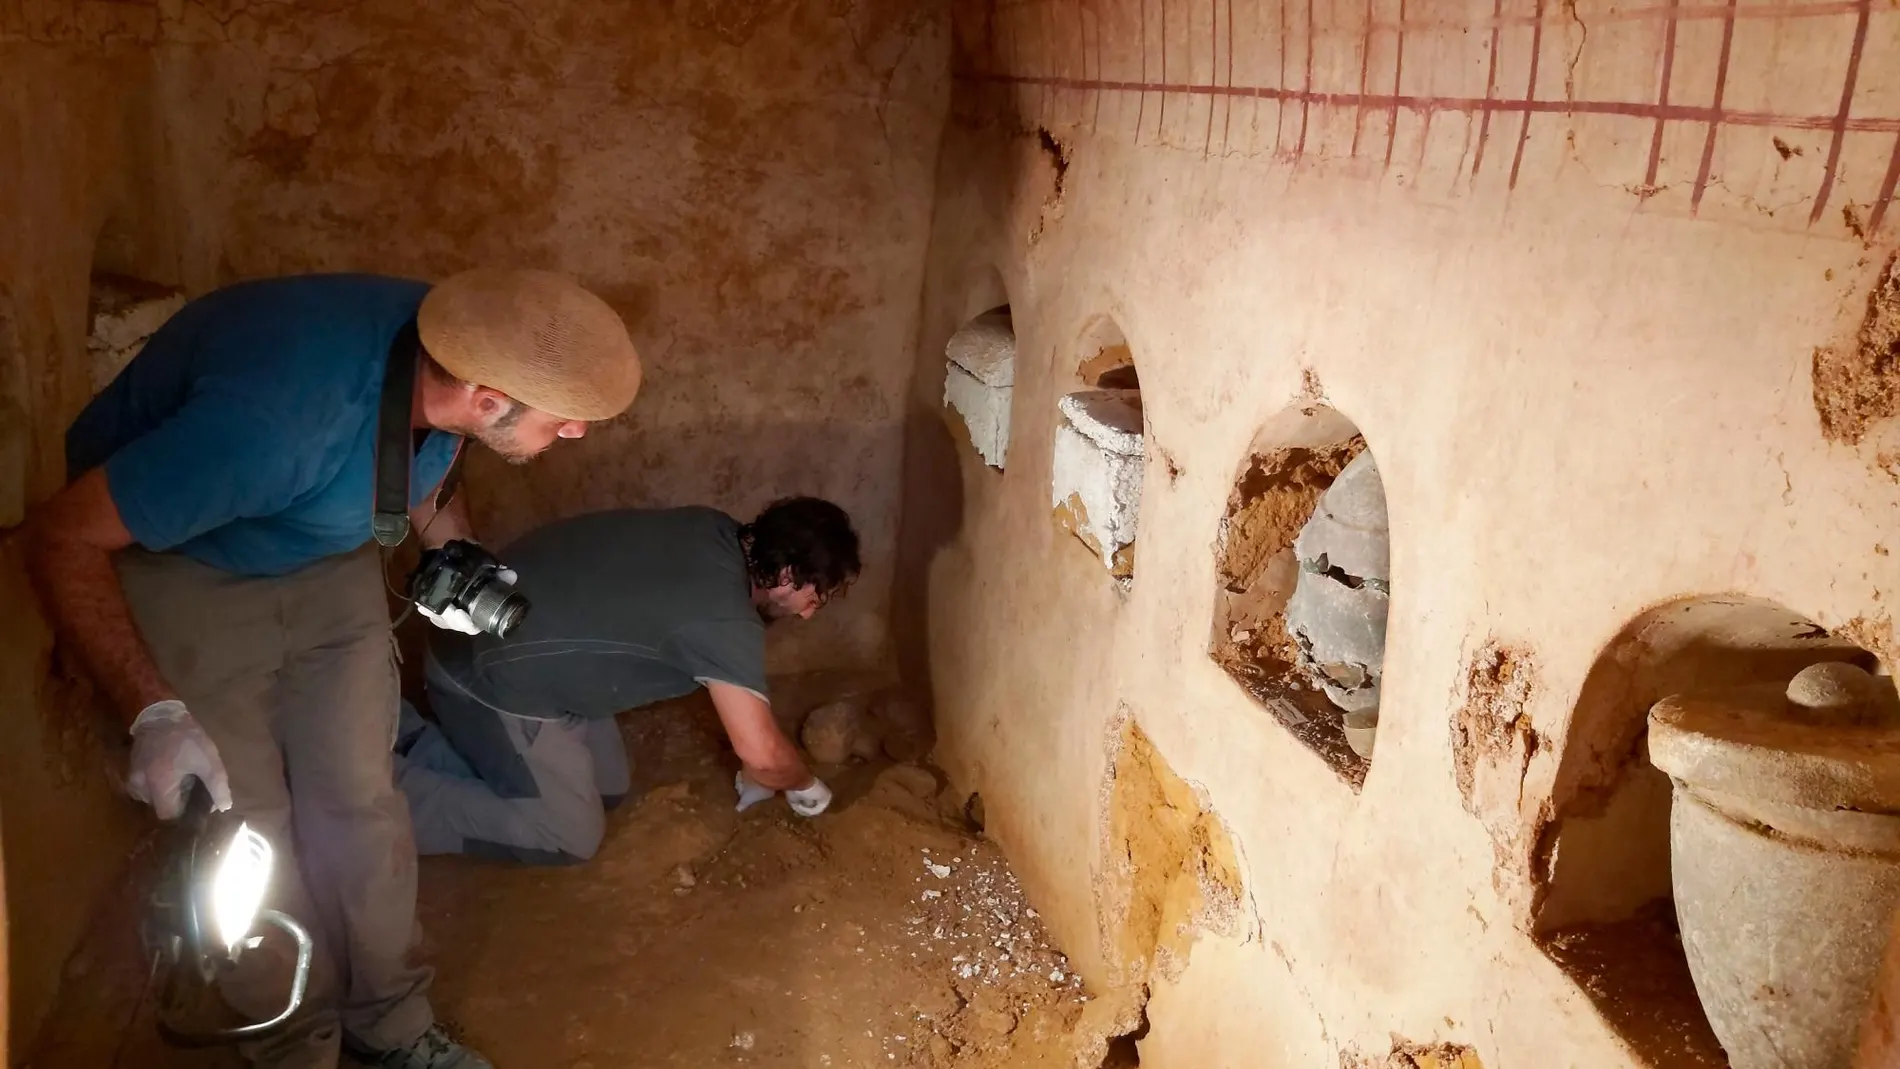 Los arqueólogos trabajan en la tumba romana recién descubierta / LA RAZÓN